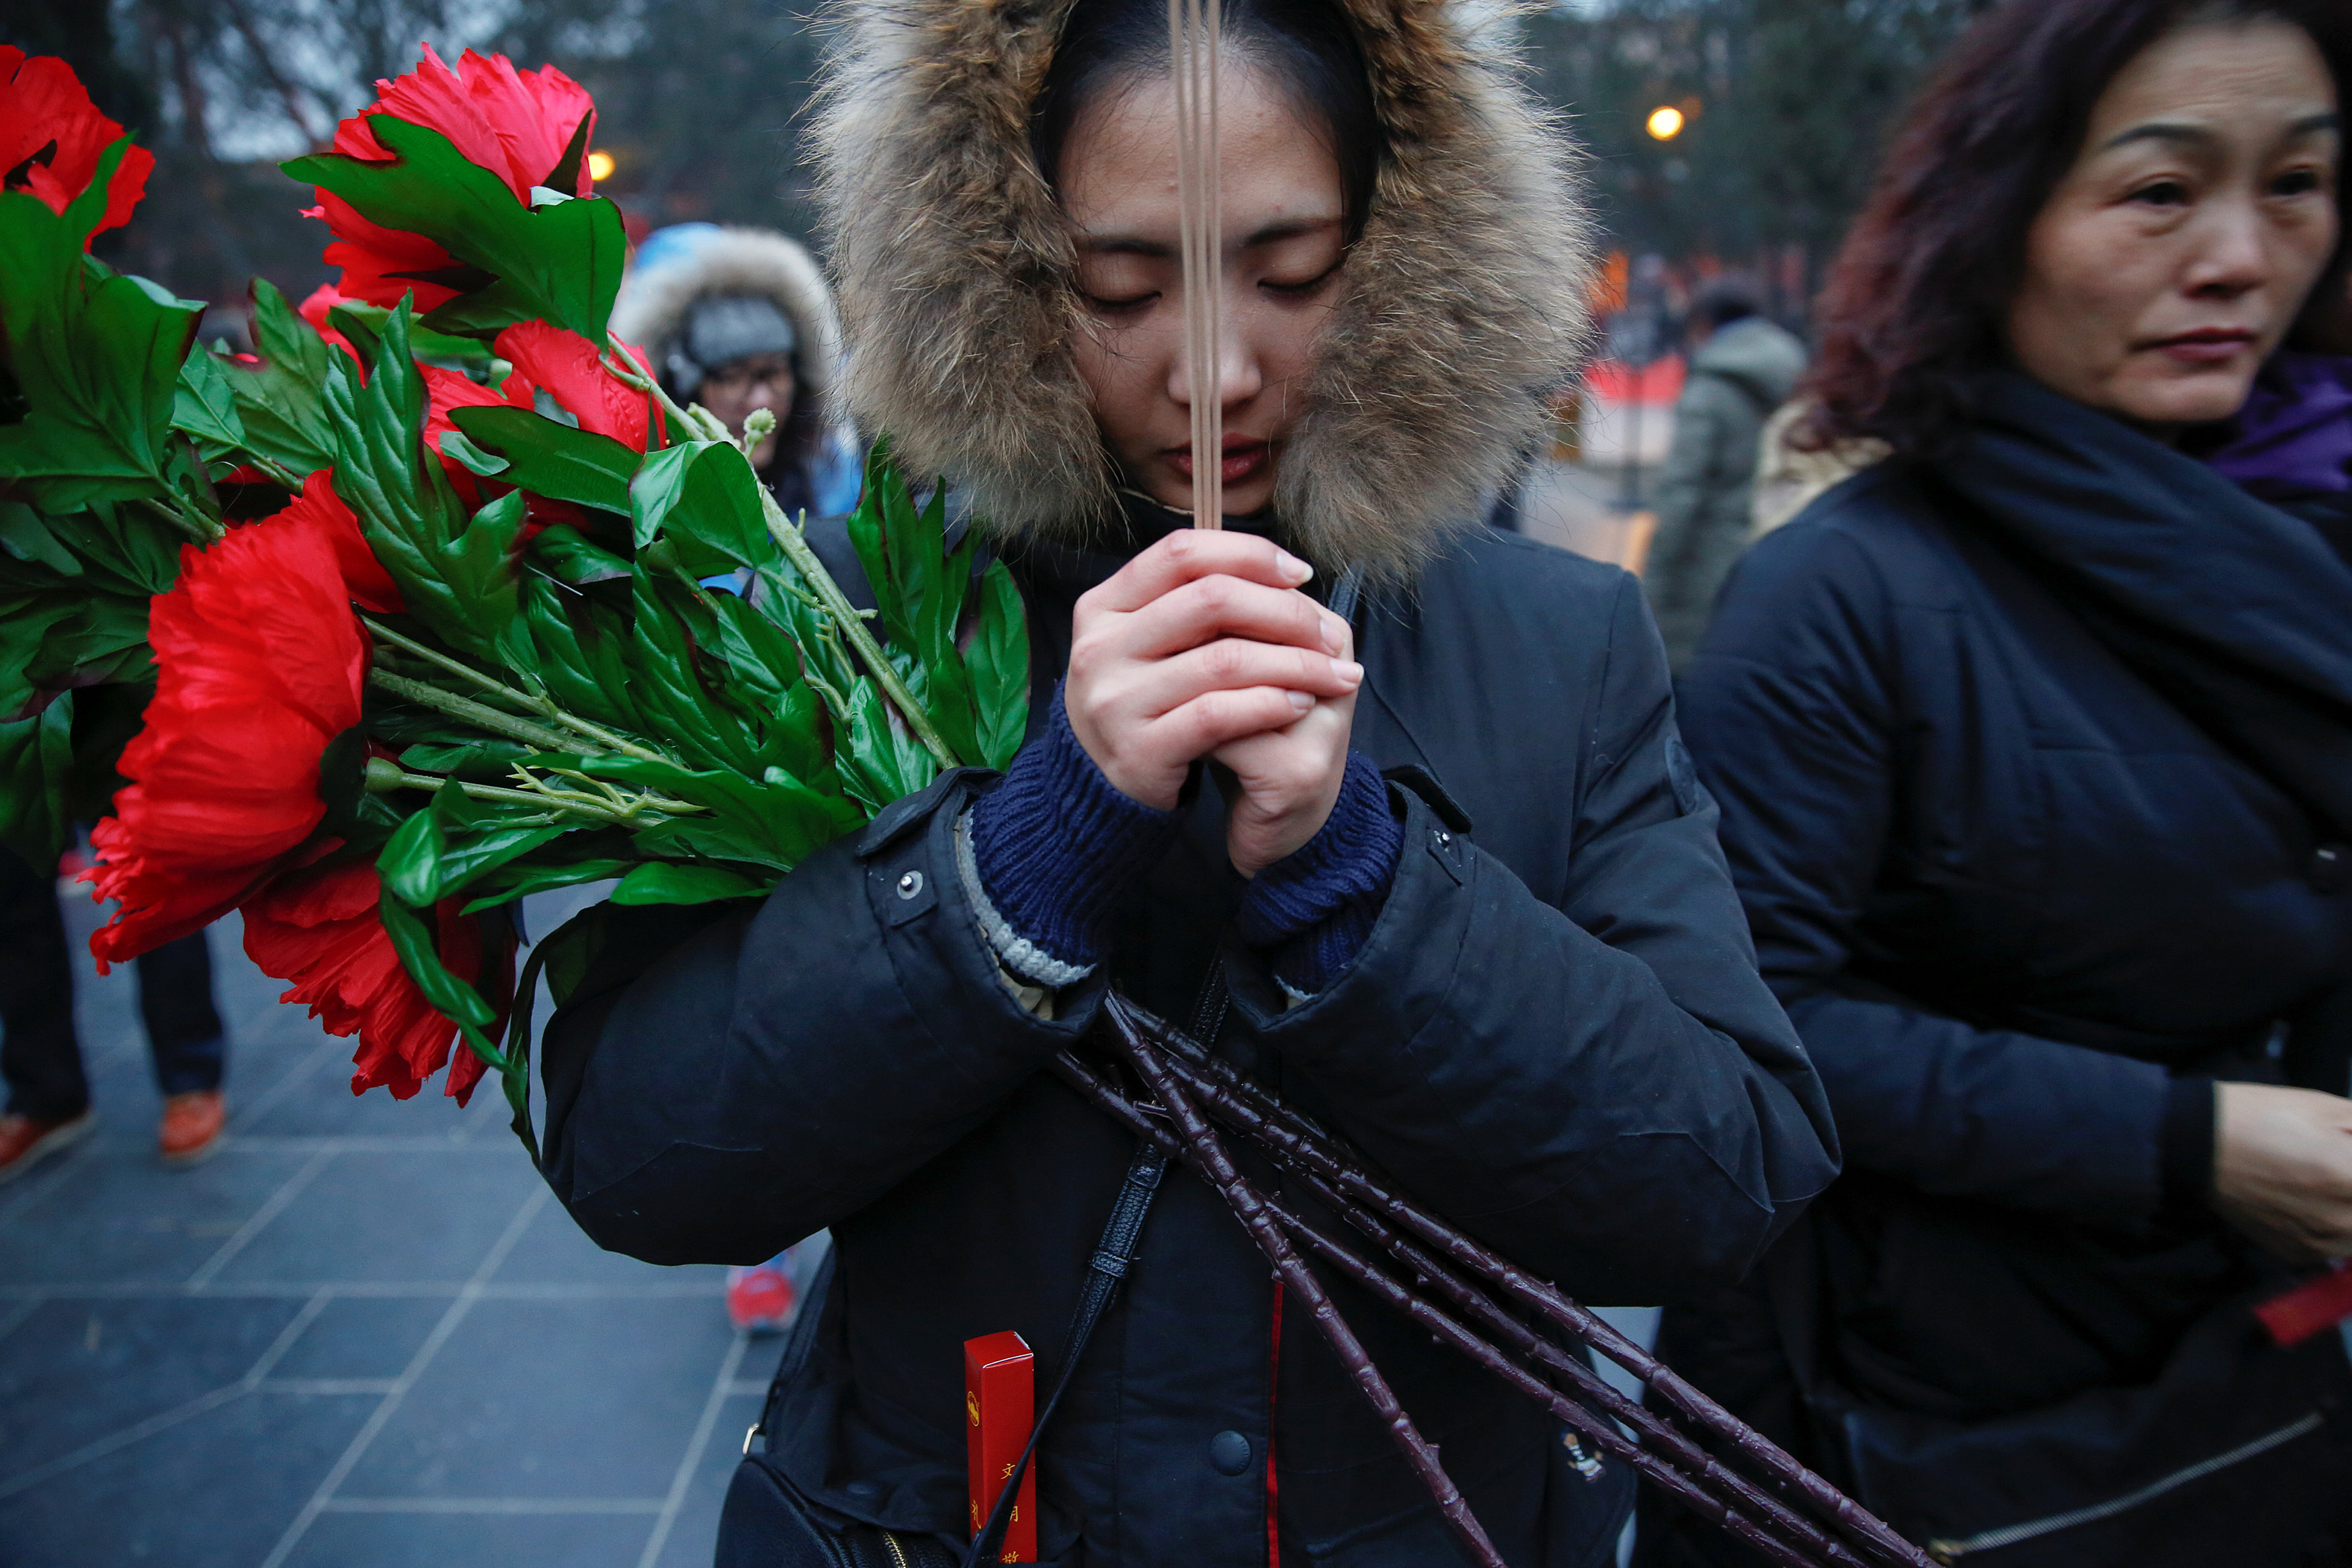 سيدة تحمل الورود والبخور خلال احتفالات السنة القمرية الجديدة فى الصين